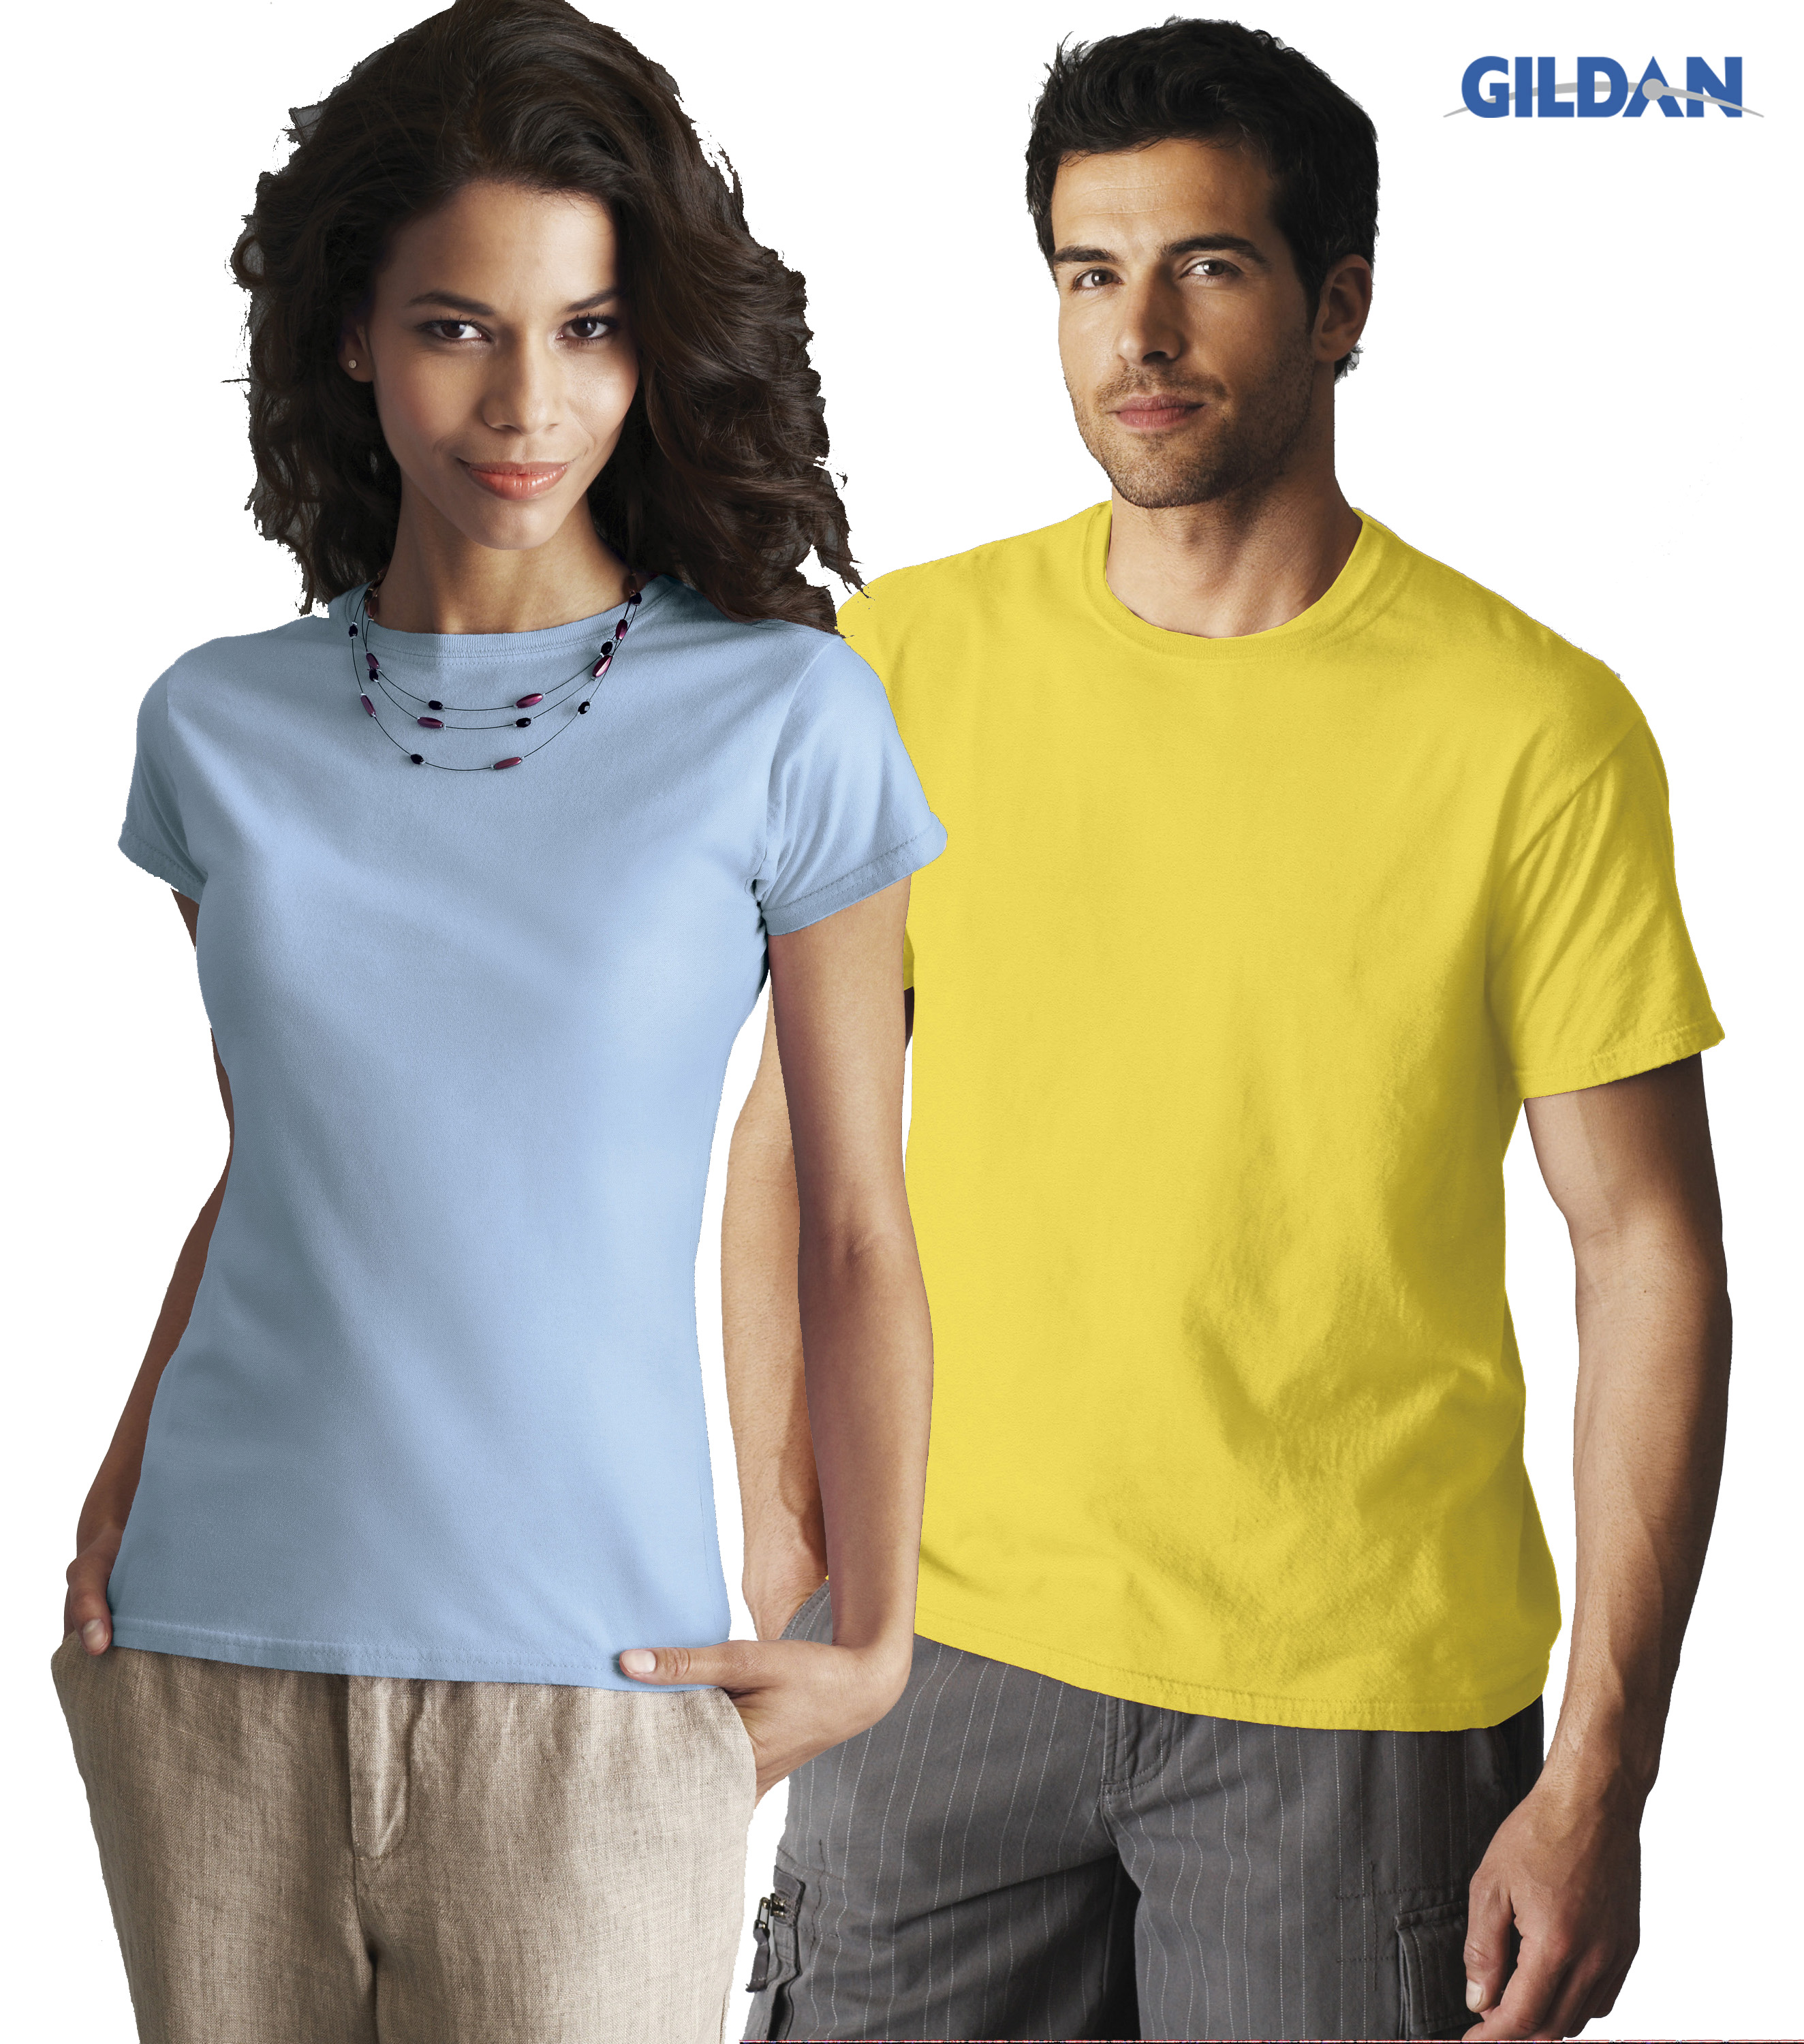 Men's T-shirt en Ladies Fitted T-shirt